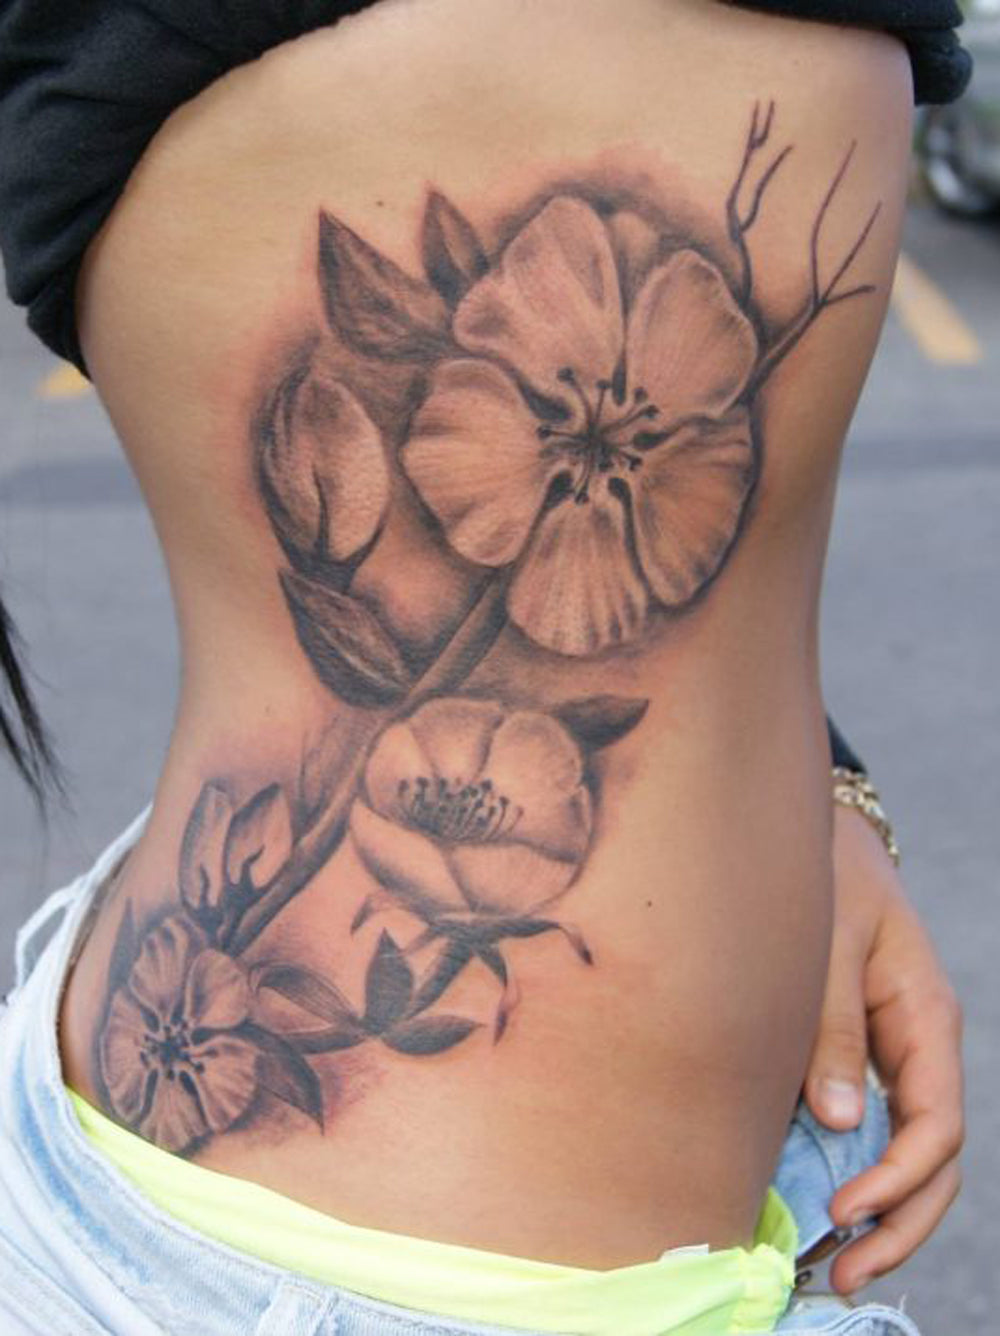 Realistic Hawaiian Flower Rib Womens Tattoo Ideas - Traditional Floral Flower Side Body Tatt -  Ideas realistas del tatuaje de la mujer de la costilla hawaiana de la flor - www.MyBodiArt.com